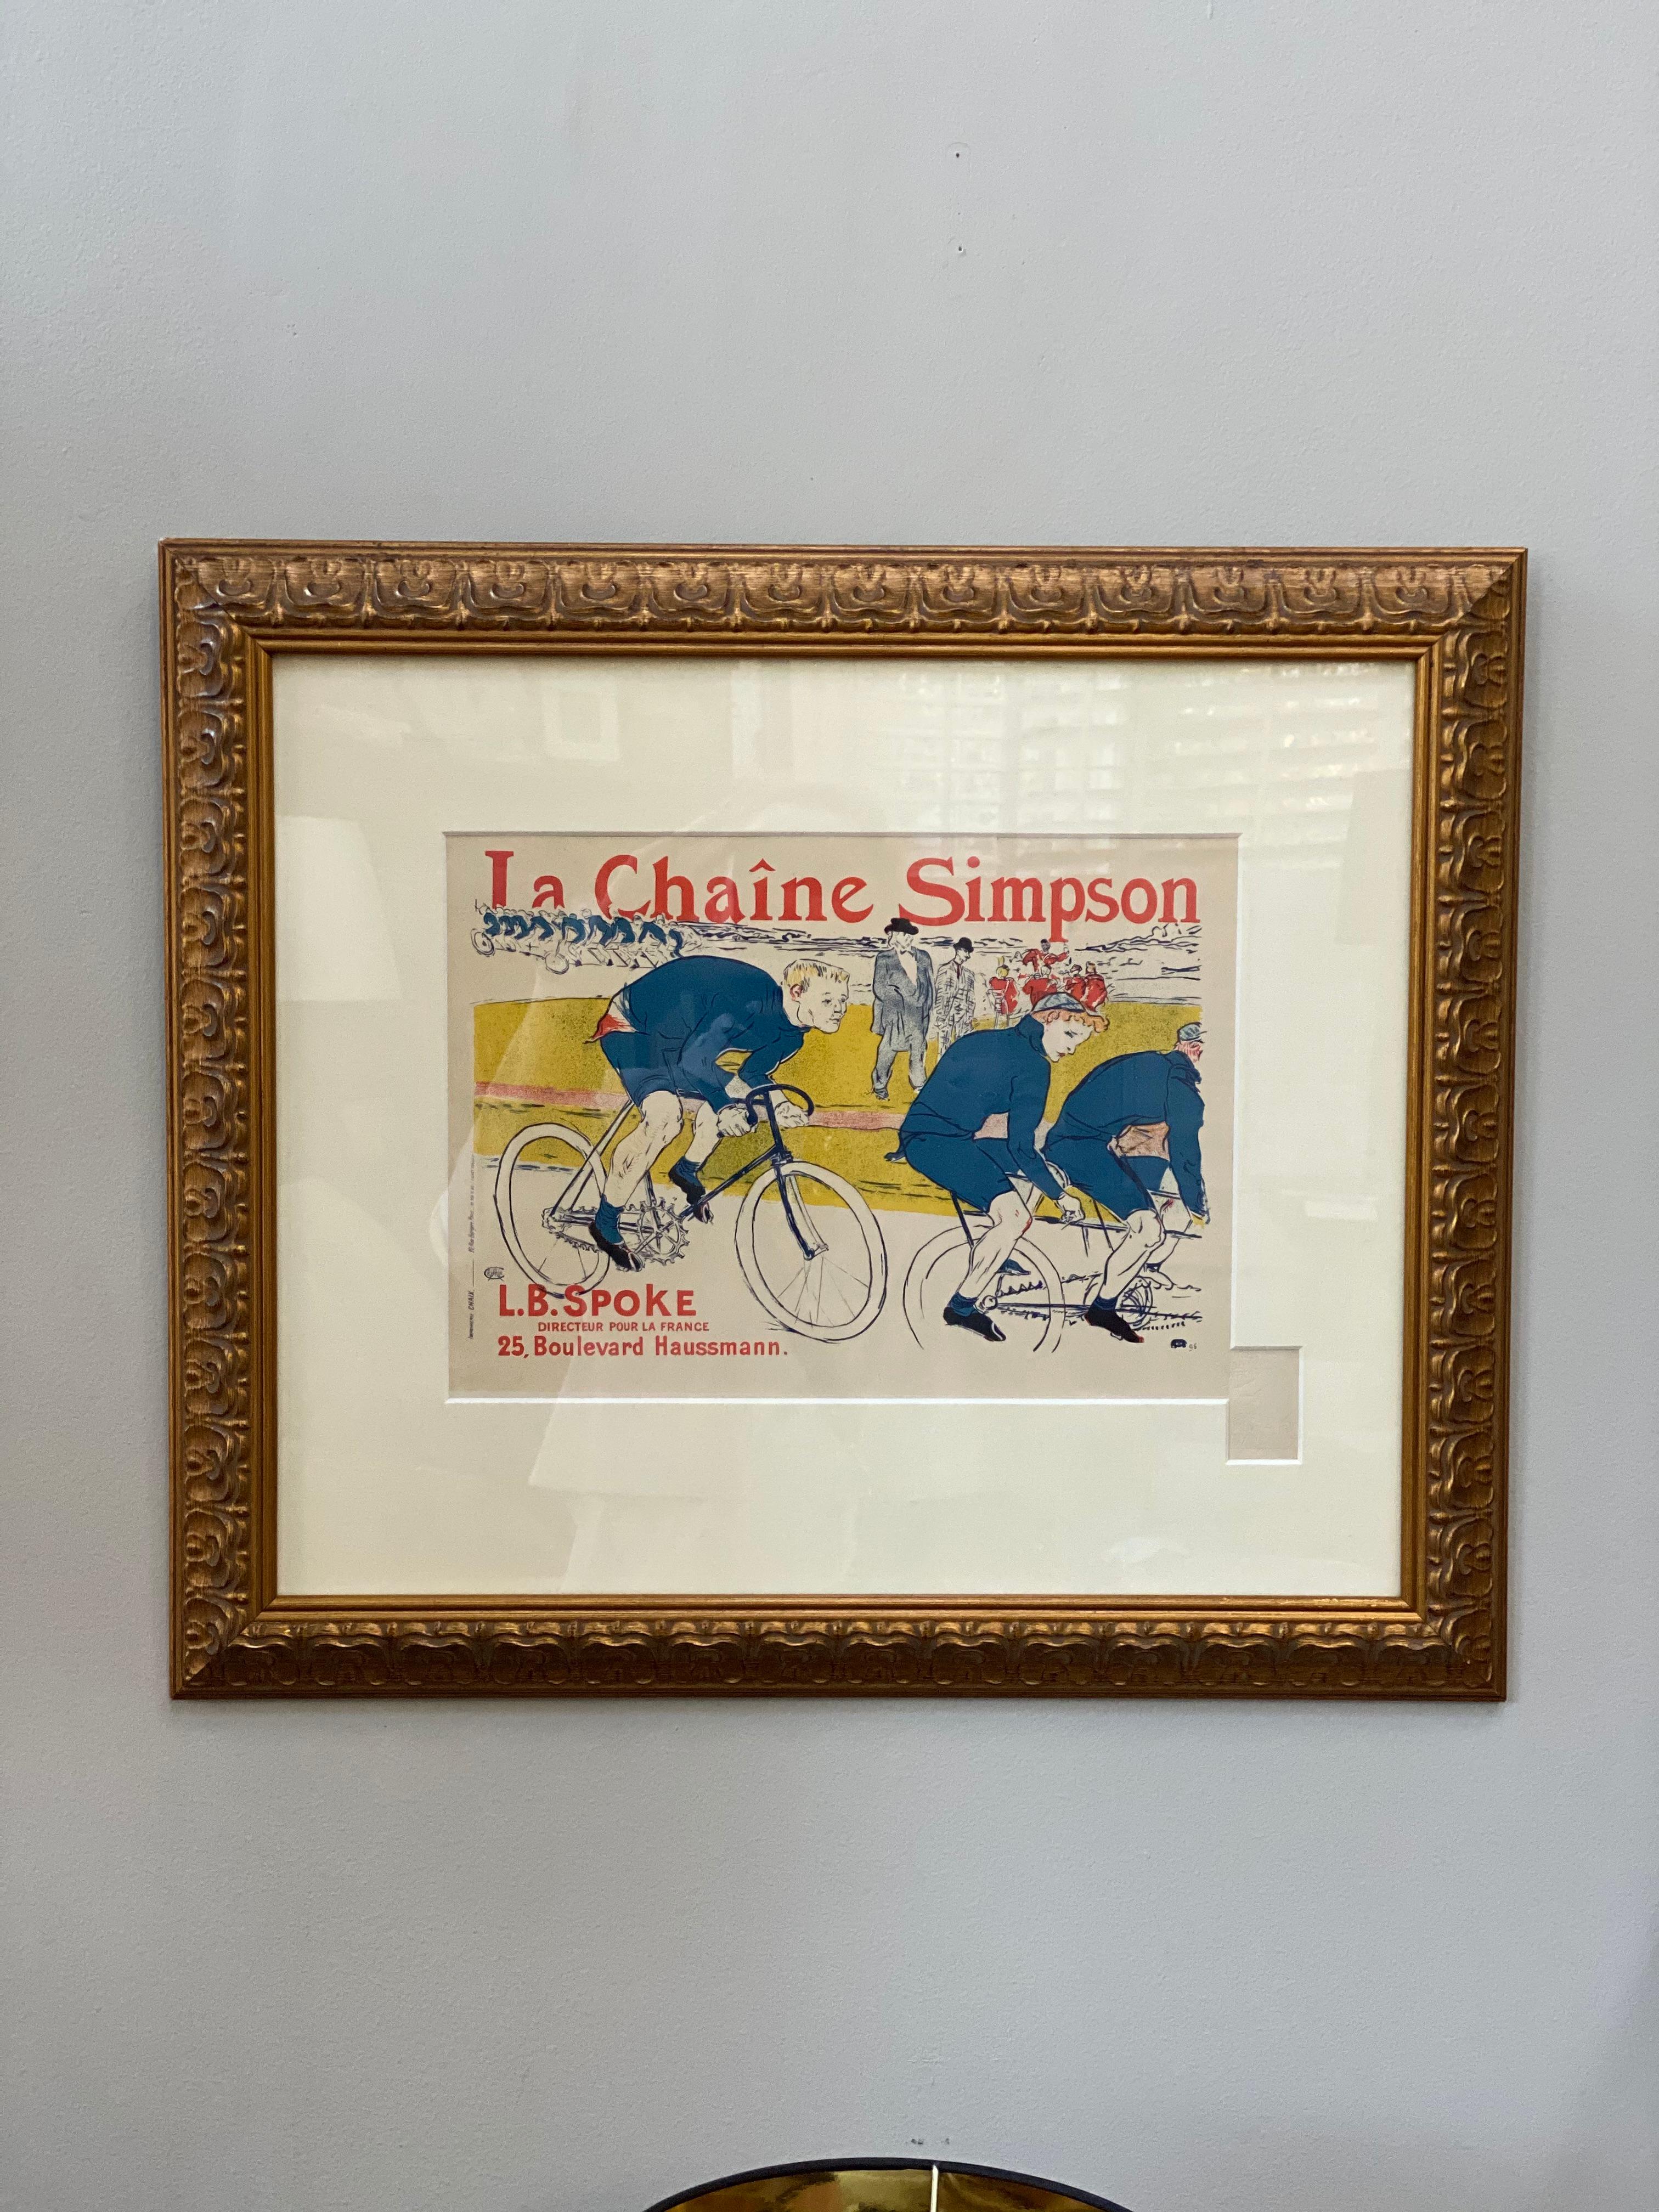 « LA CHAINE SIMPSON » de Toulouse-Lautrec des Maitres de l'Affiche - Print de Henri de Toulouse-Lautrec